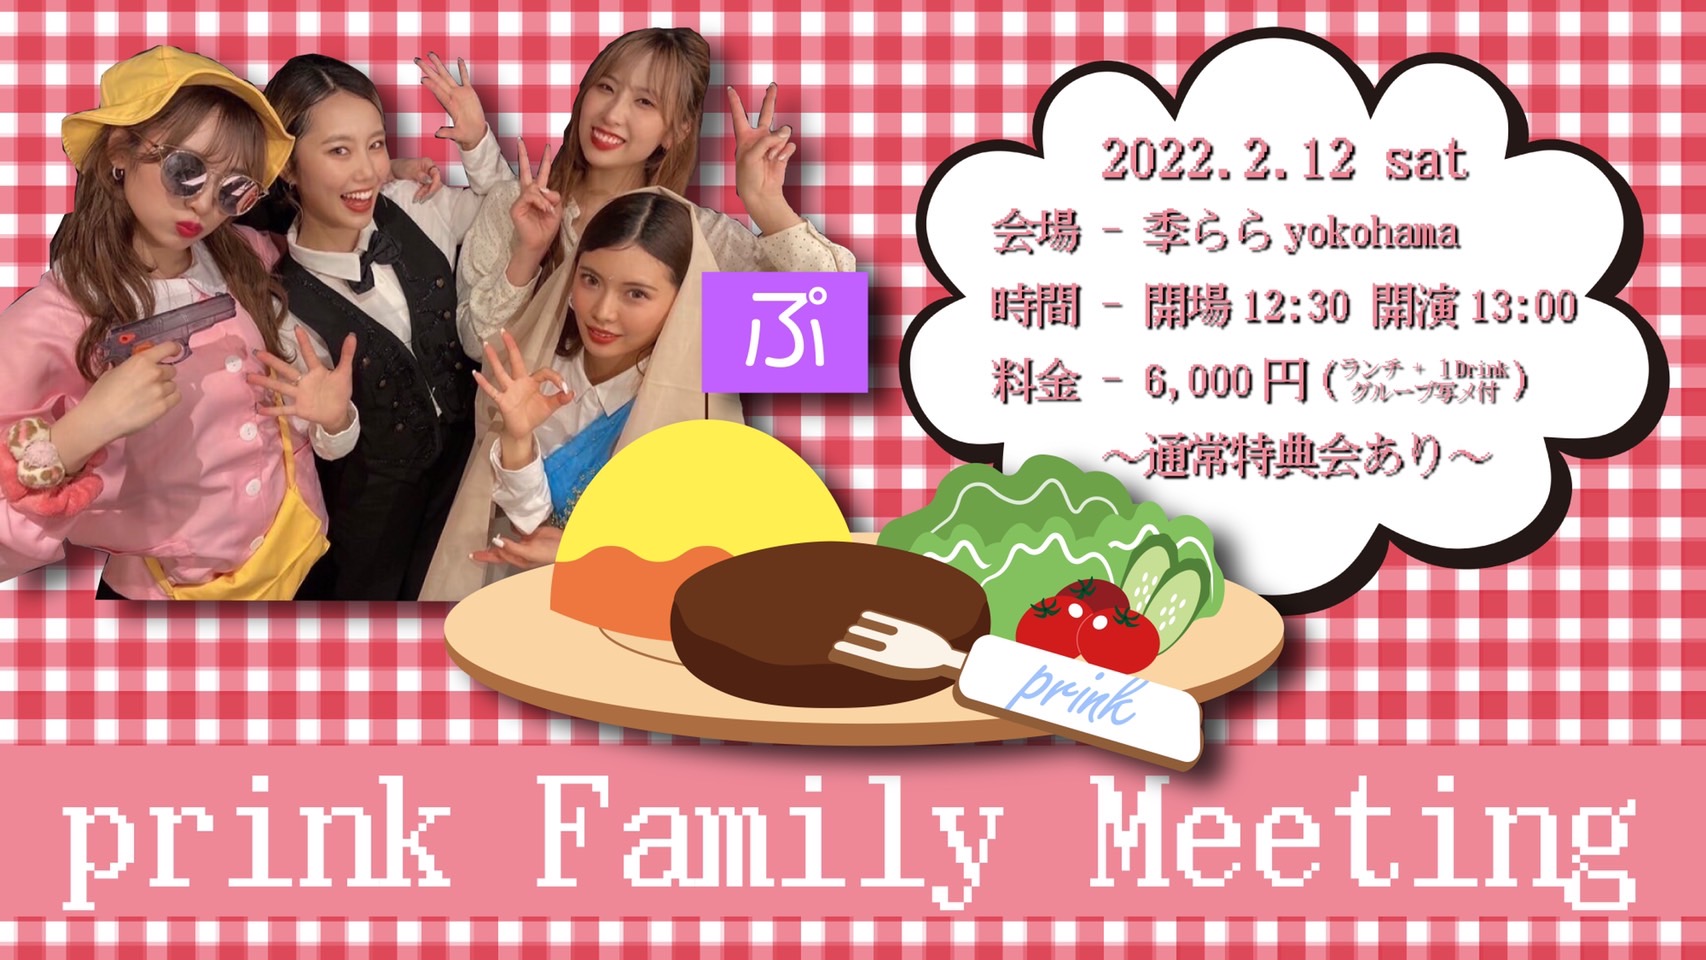 【ファンイベント】prink Family Meeting（神奈川・横浜）